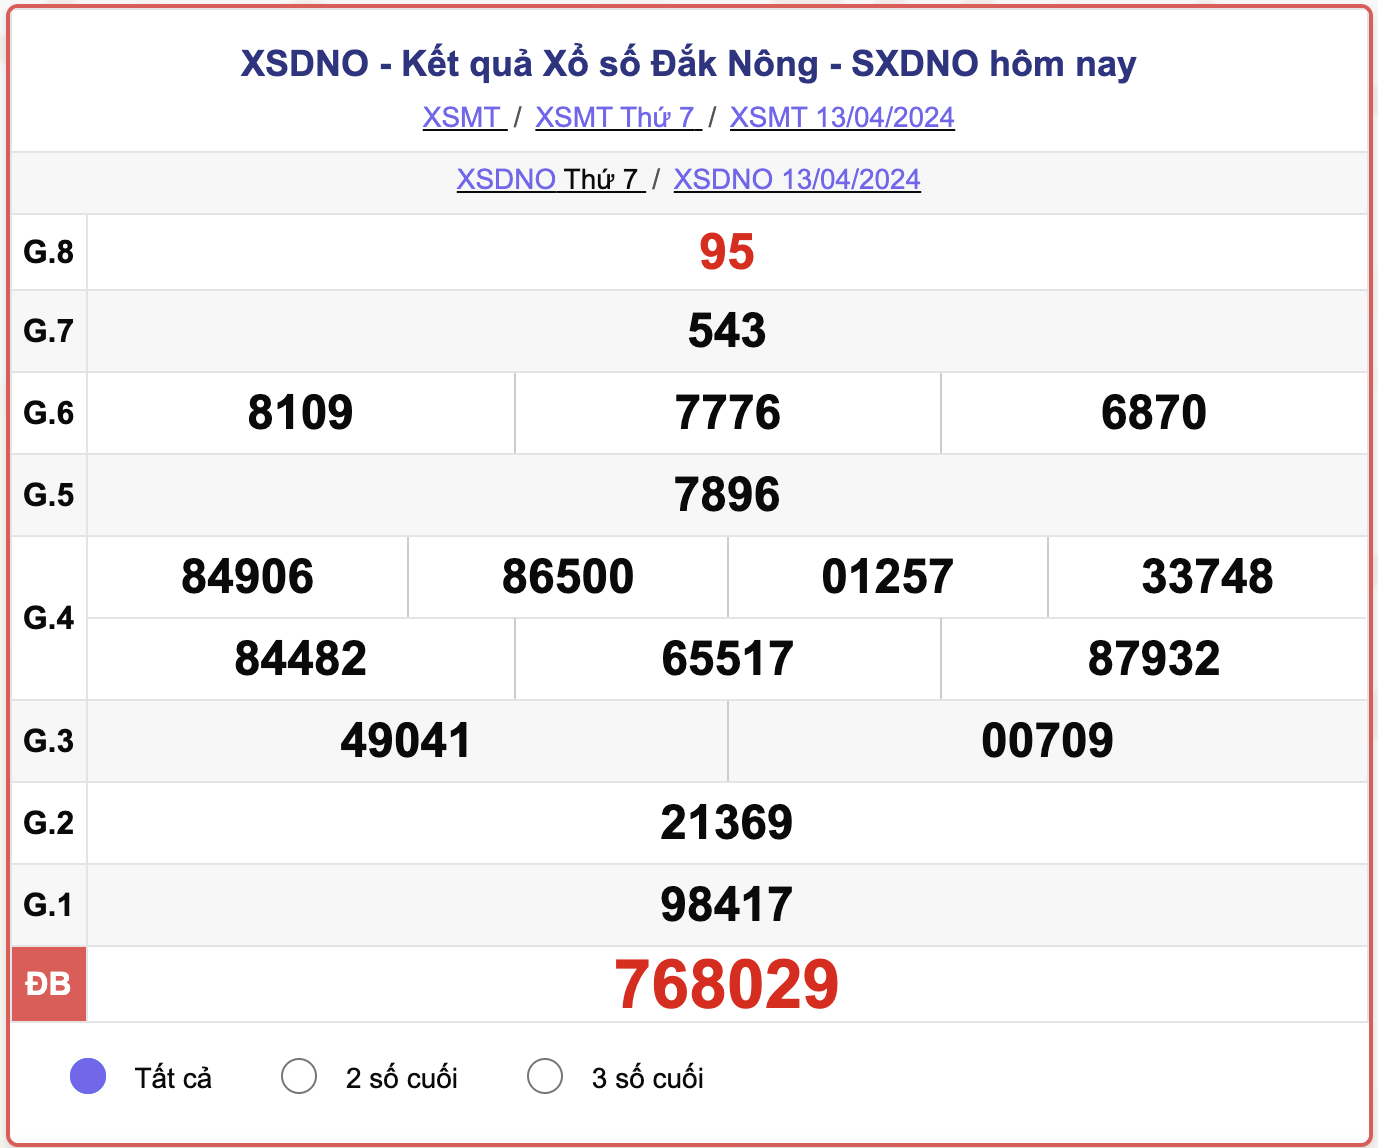 XSDNO thứ 7, kết quả xổ số Đắk Nông ngày 13/4/2024.